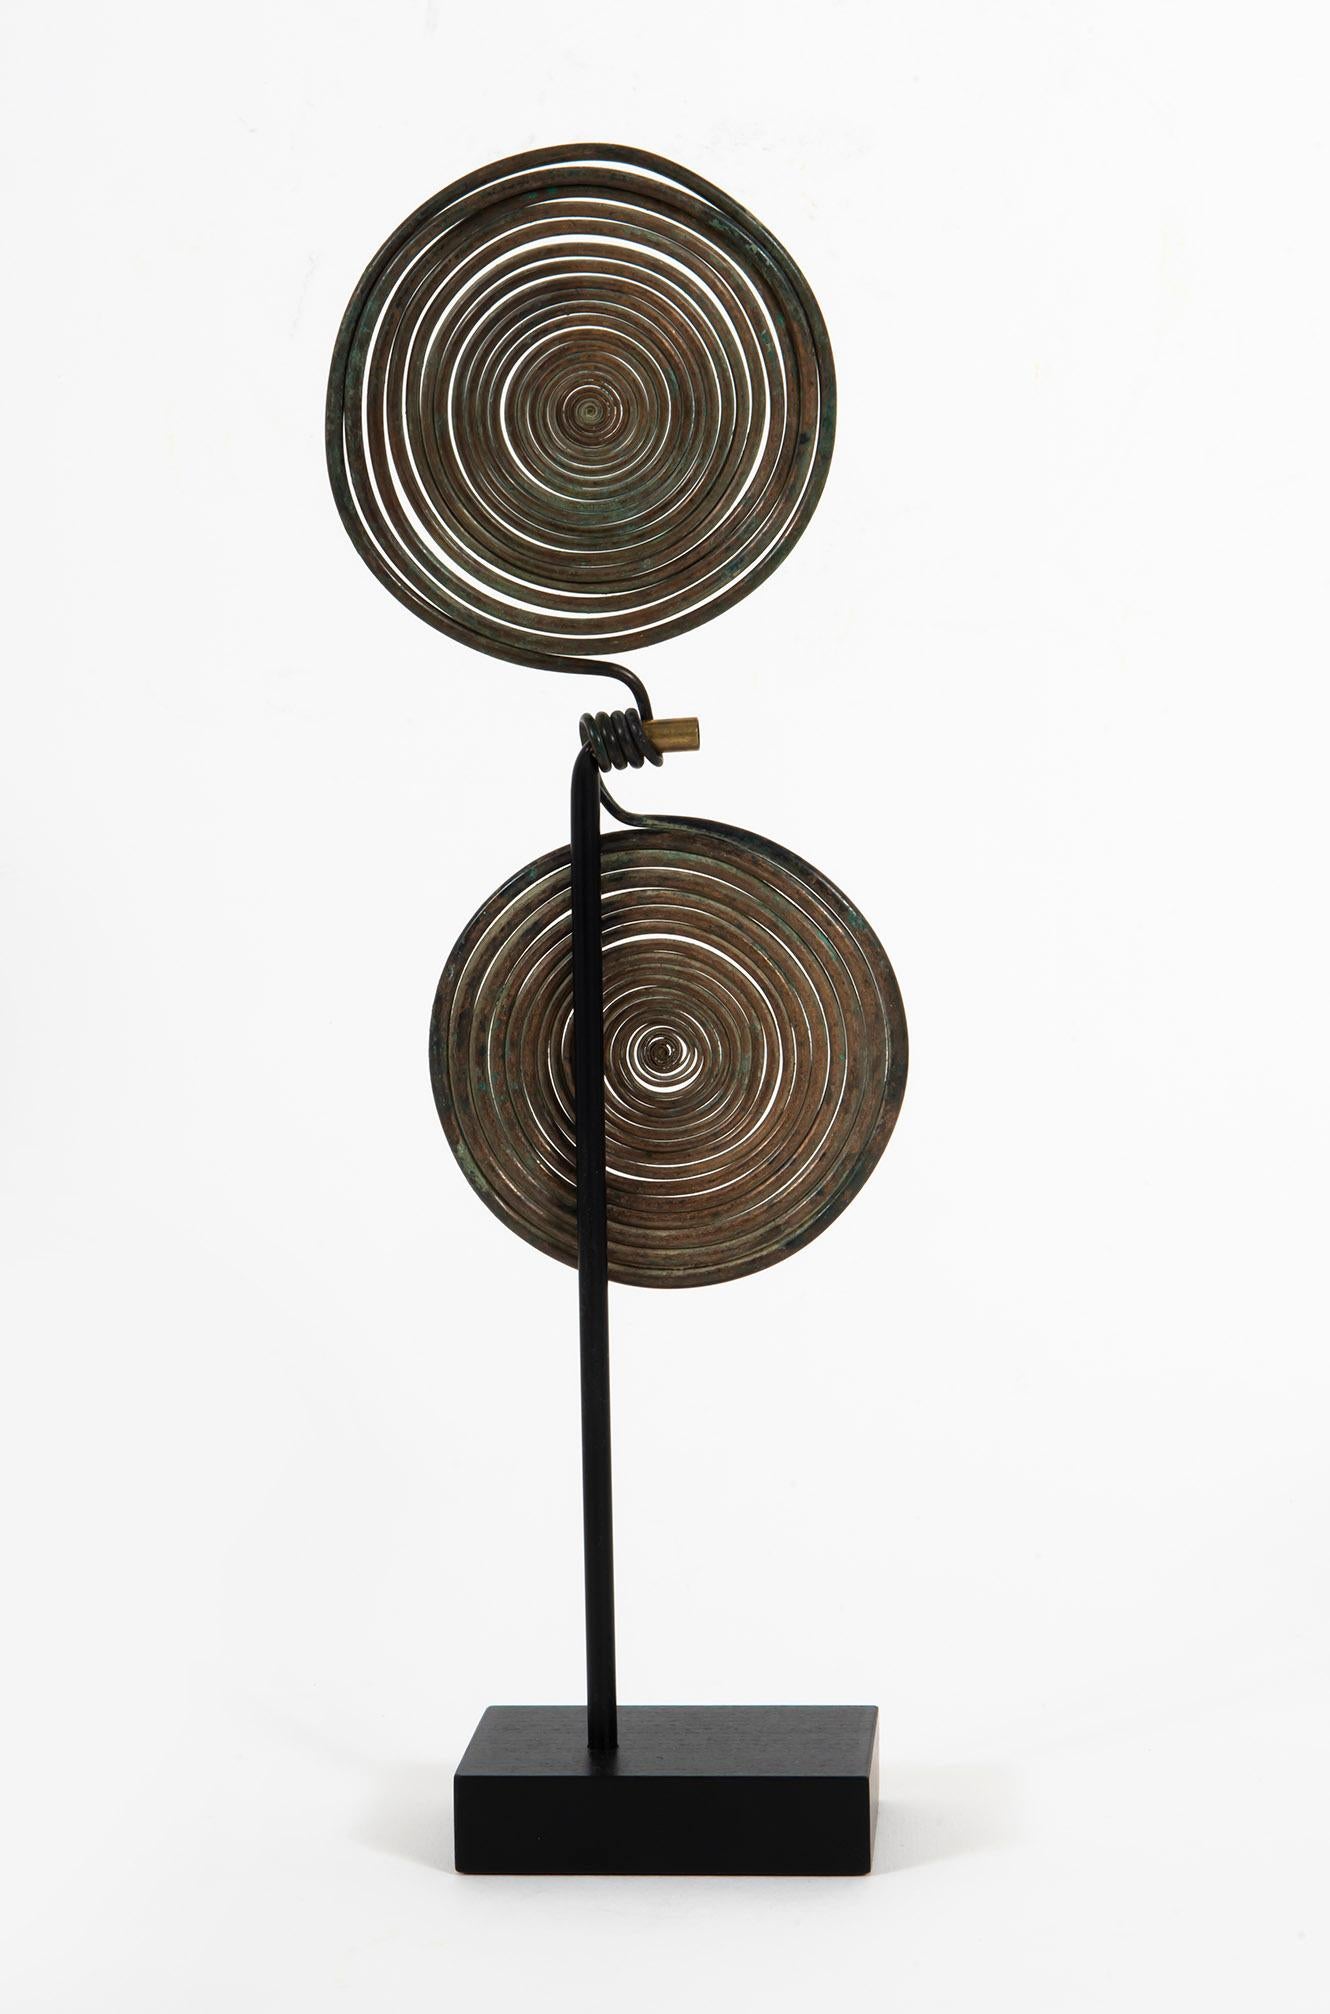 Spiralfibula, Hallstatt, 1. Eisenzeitalter, Bronze, Skulptur, Design, Antike